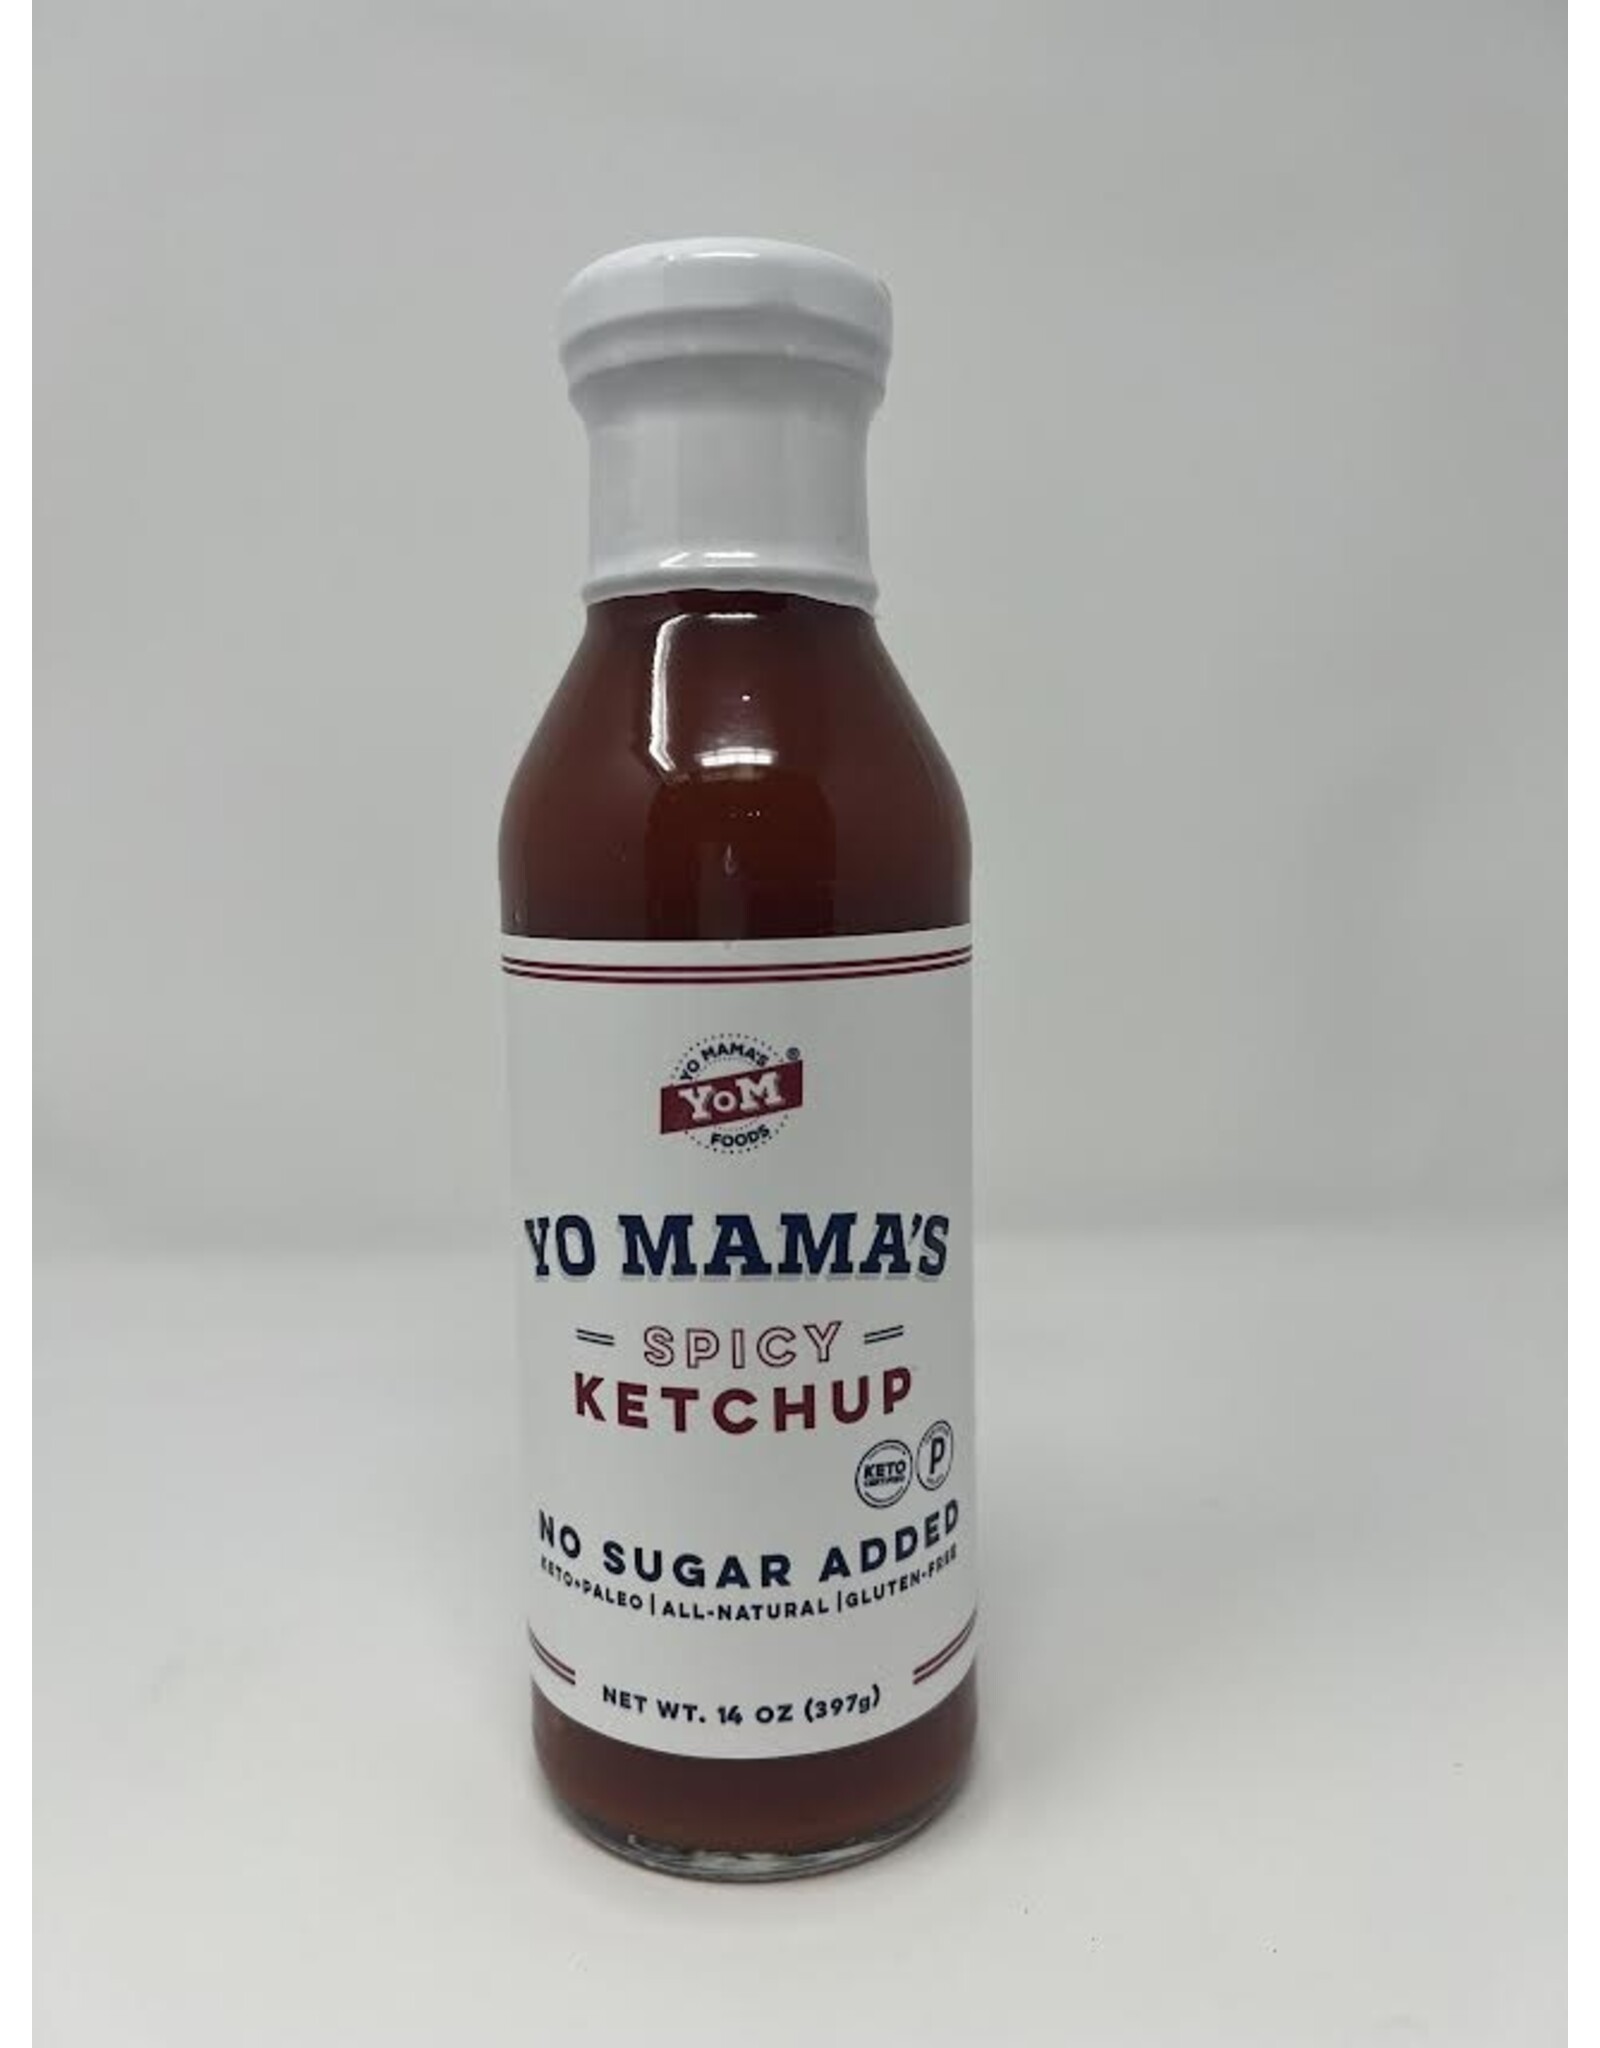 YO MAMA'S Spicy ketchup